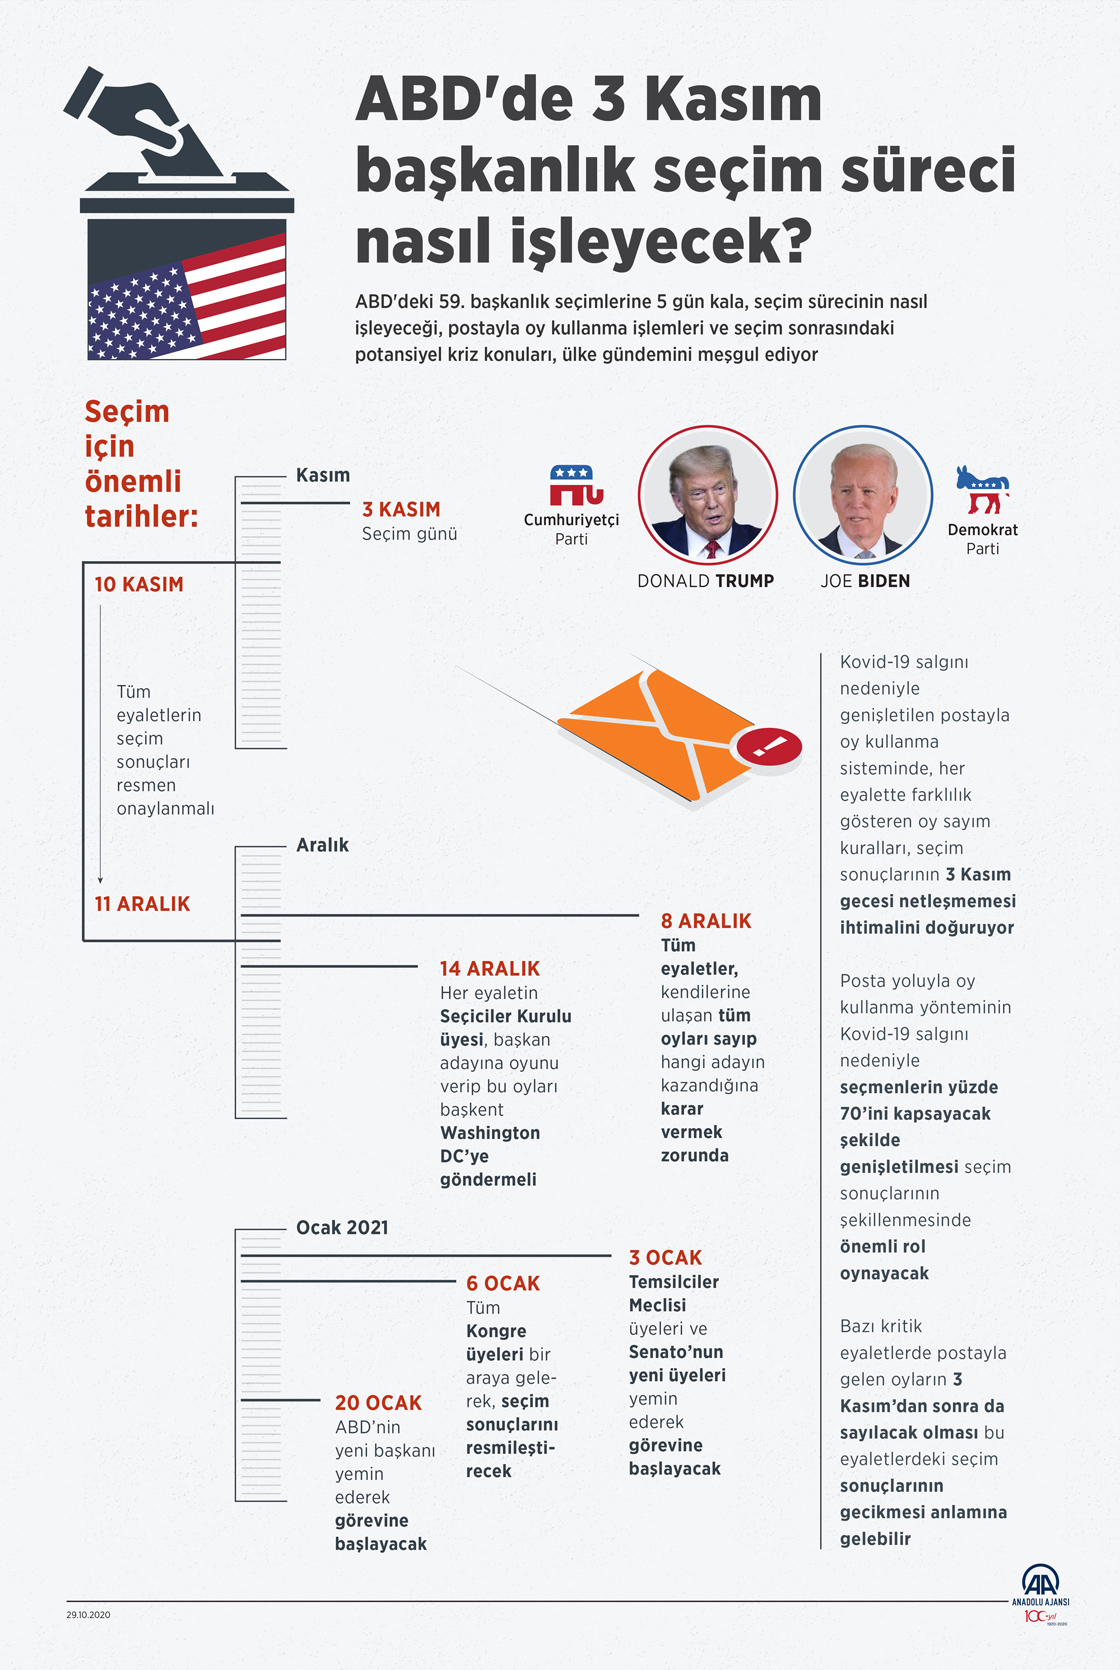  ABD'de 3 Kasım başkanlık seçim süreci nasıl işleyecek?